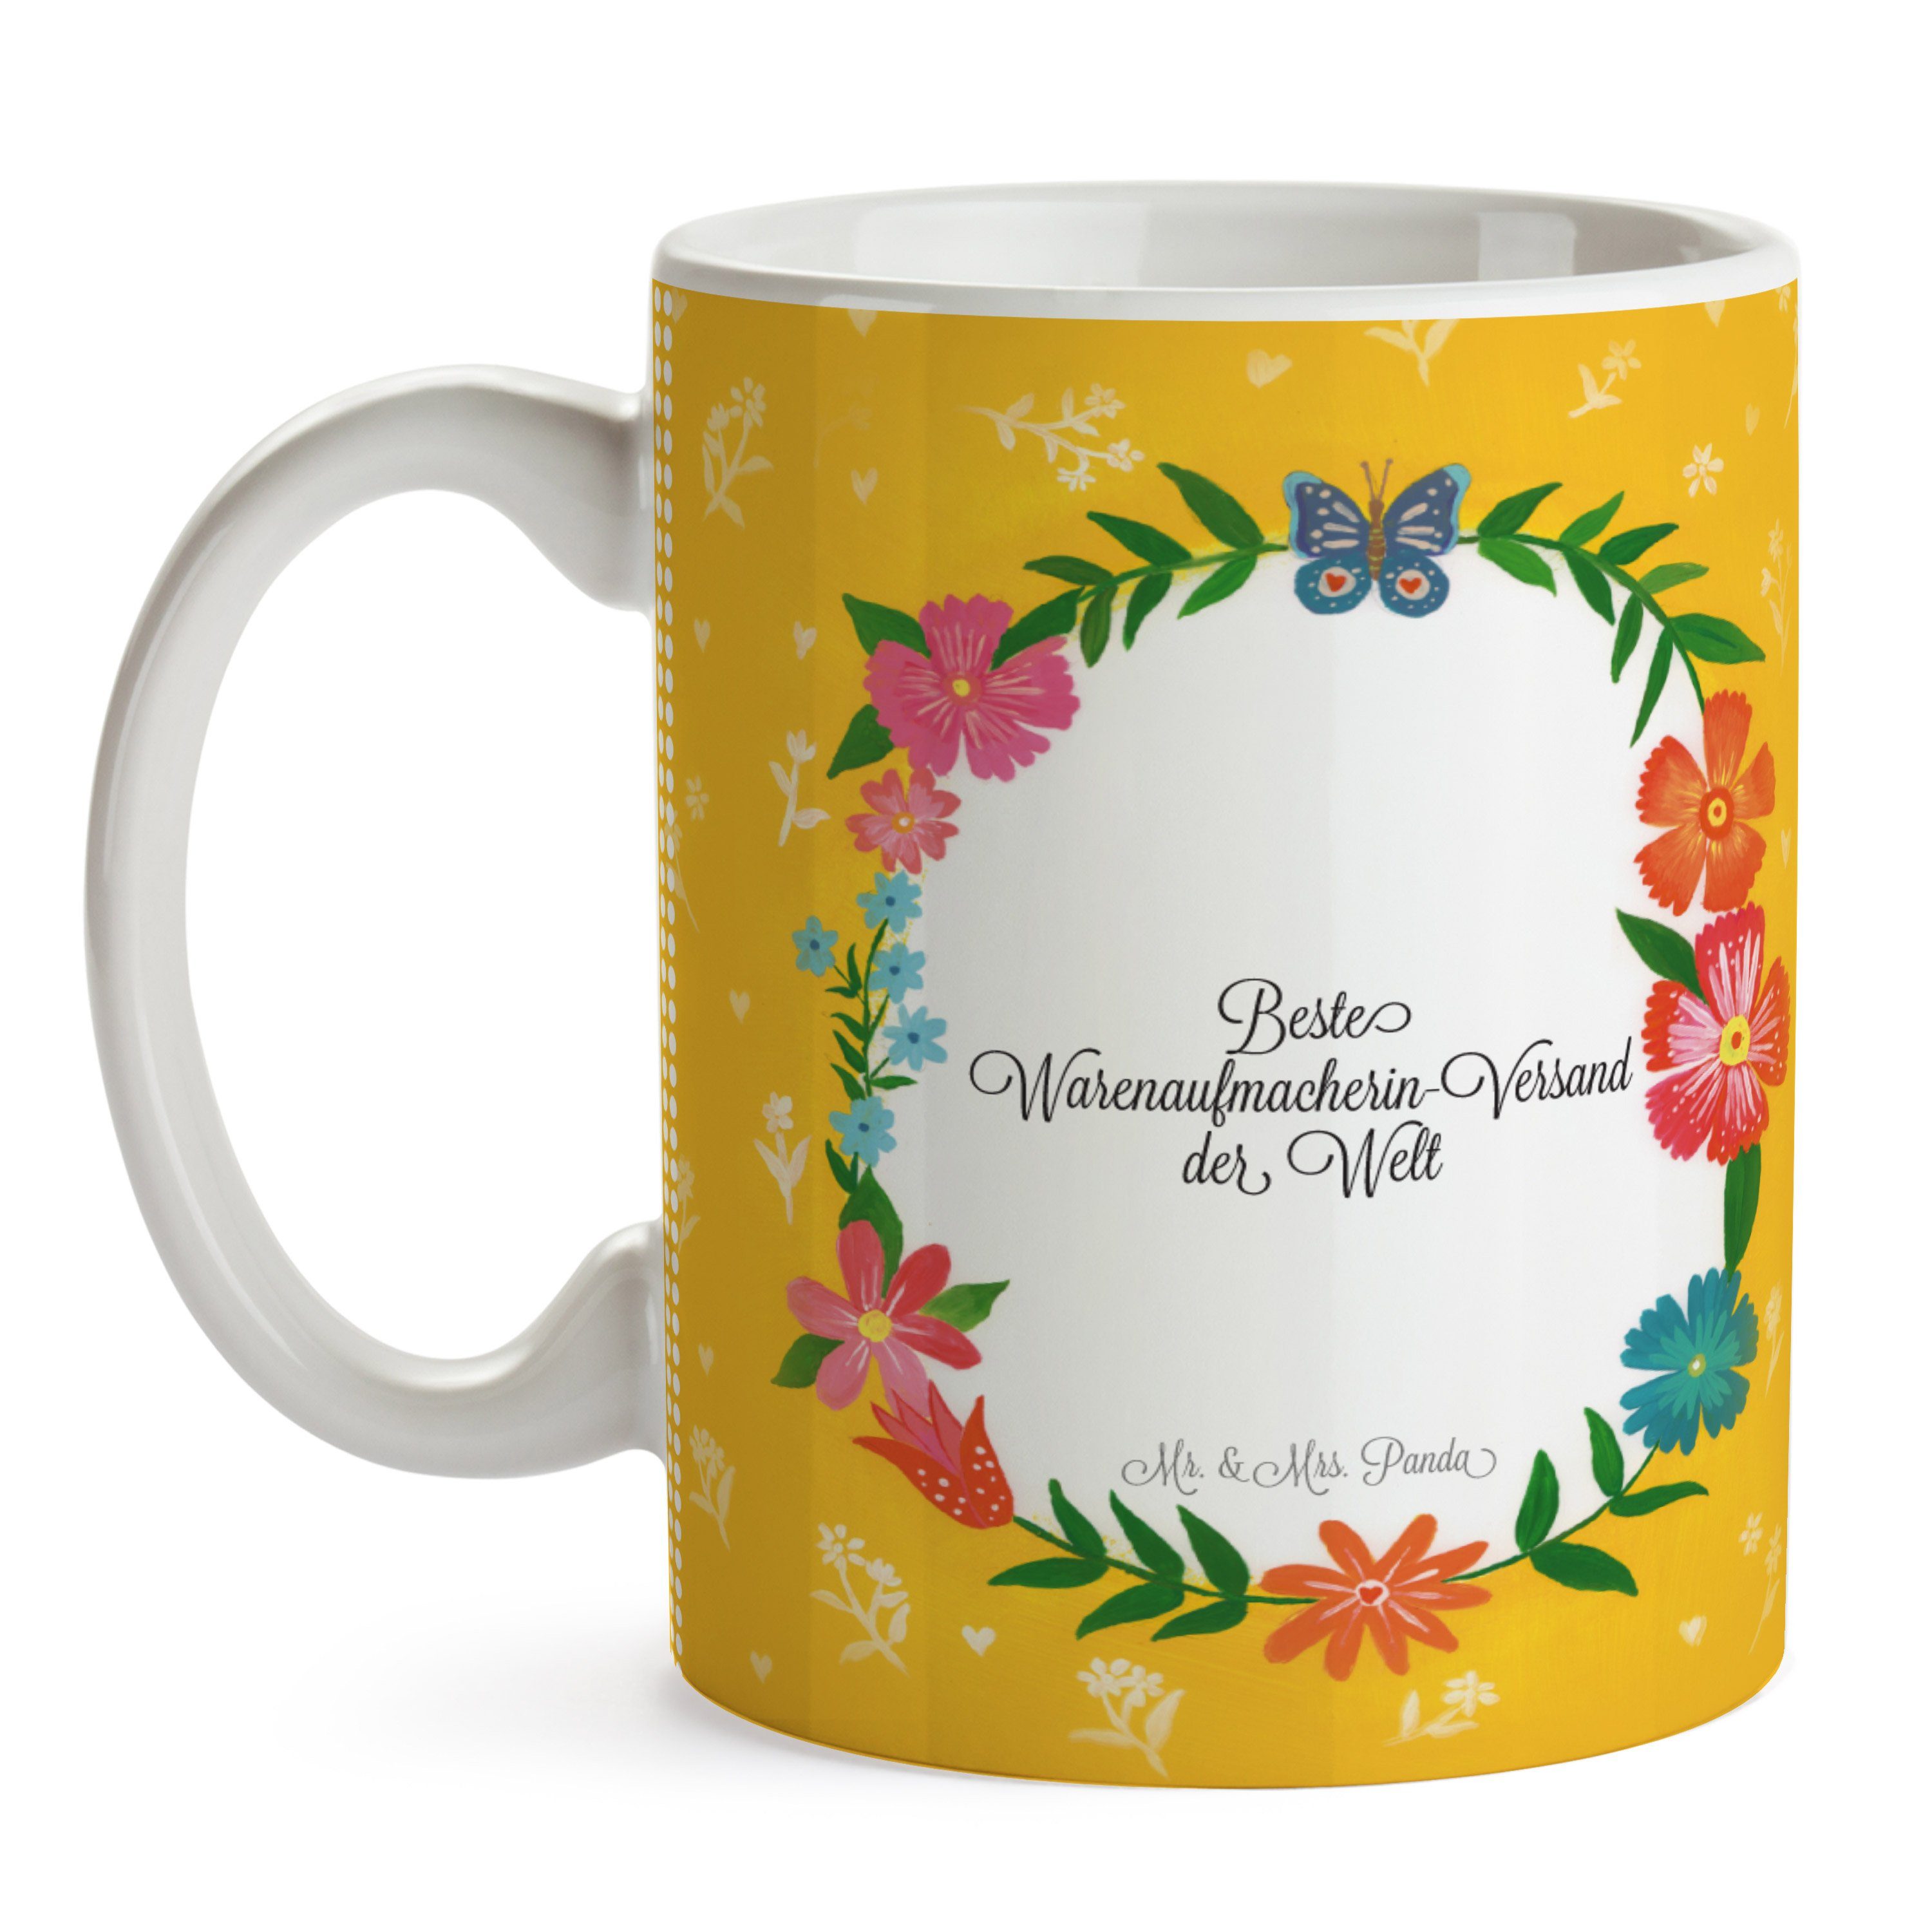 Keramik Tasse Kaffeebecher, Warenaufmacherin-Versand Geschenk, Mr. & Mrs. Panda Bachelor, - Diplom,